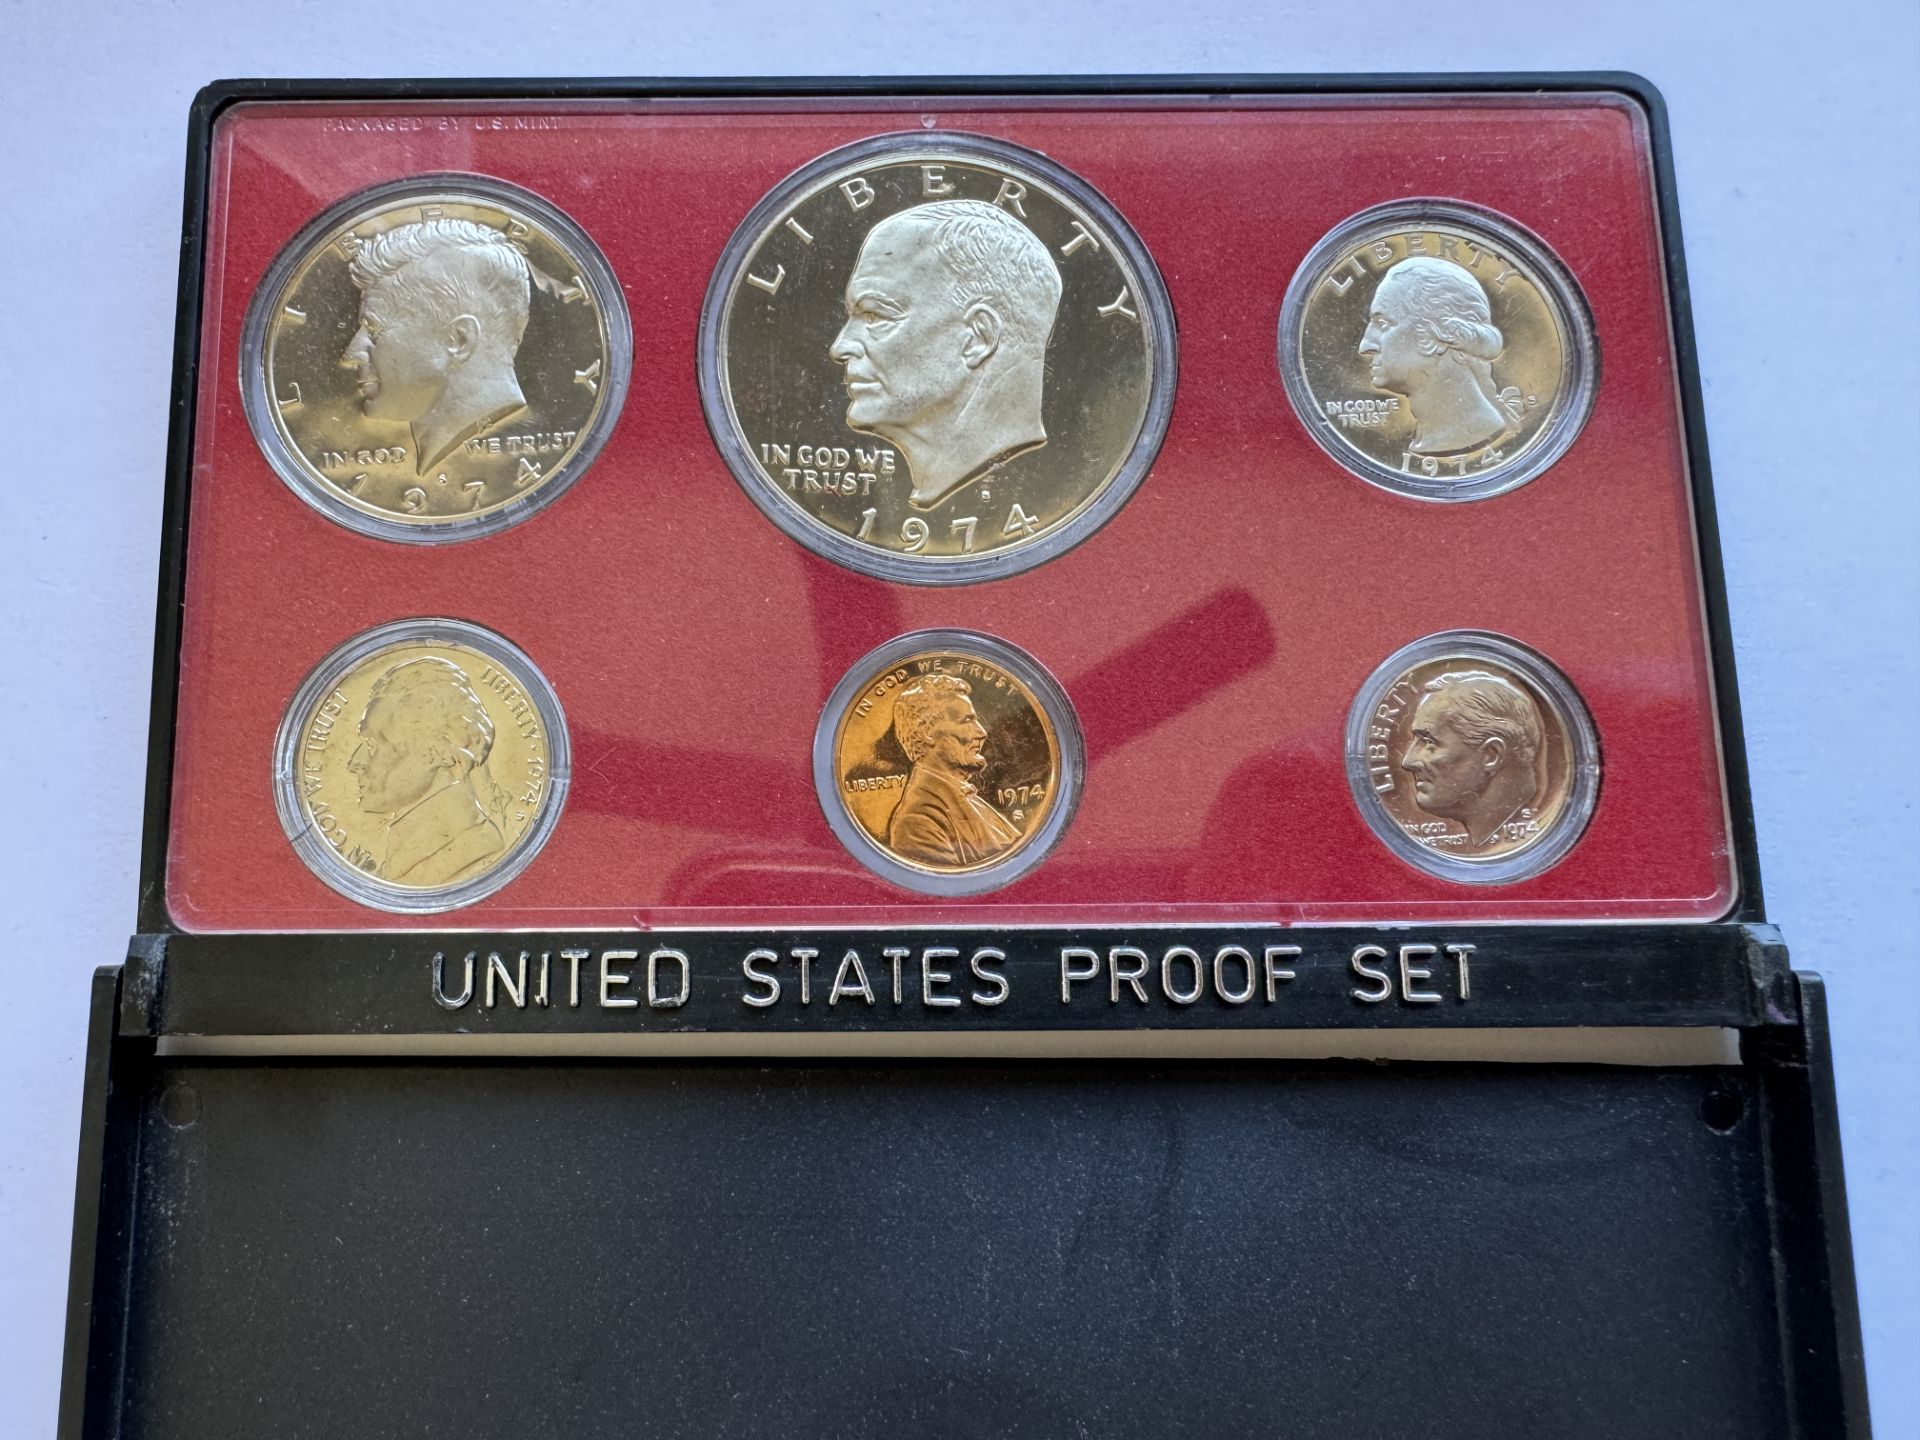 1974 UNITED STATES PROOF SET COINS U.S MINT